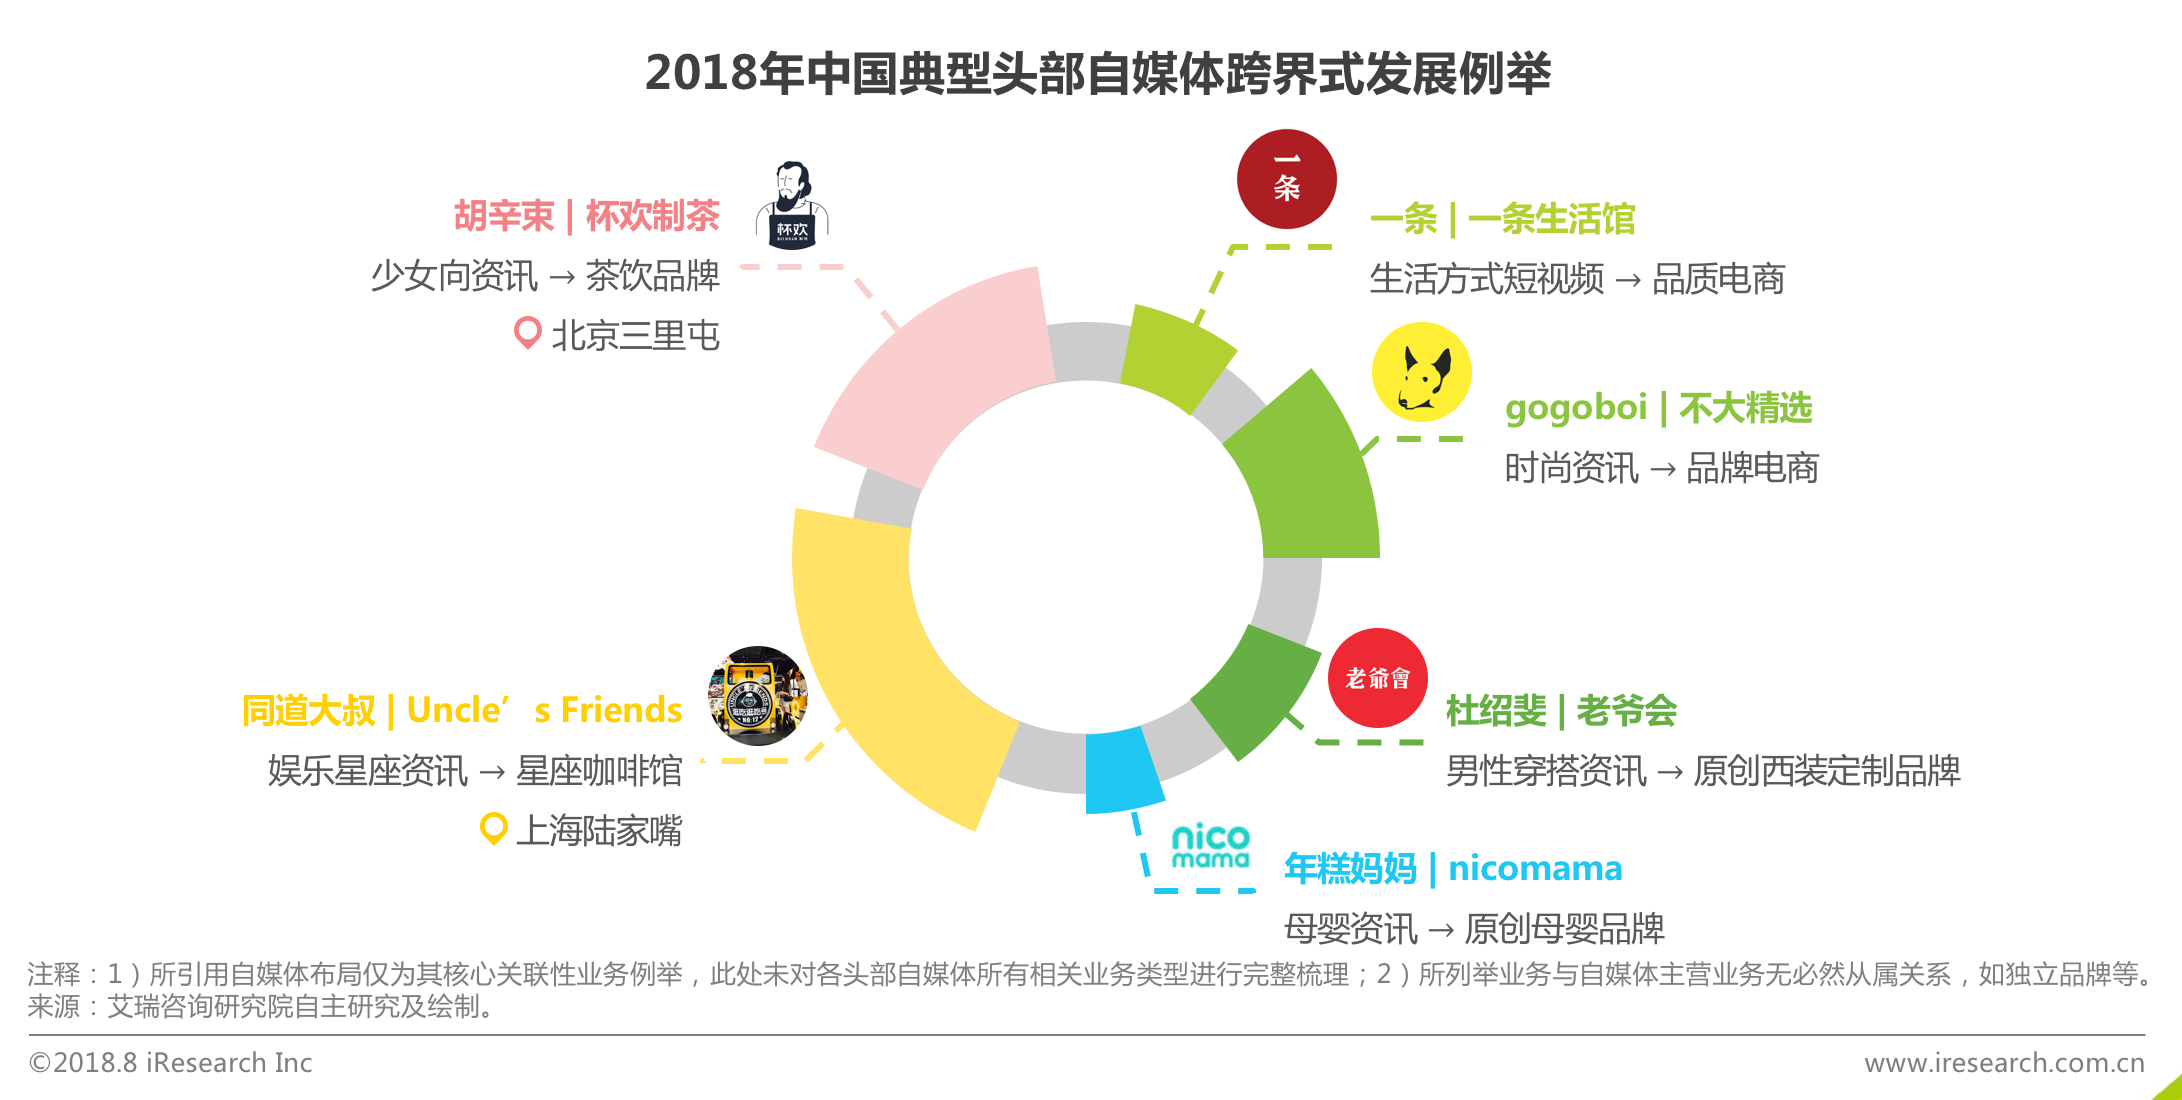 2018年中国自媒体发展分析:品牌归属和价值输出是核心